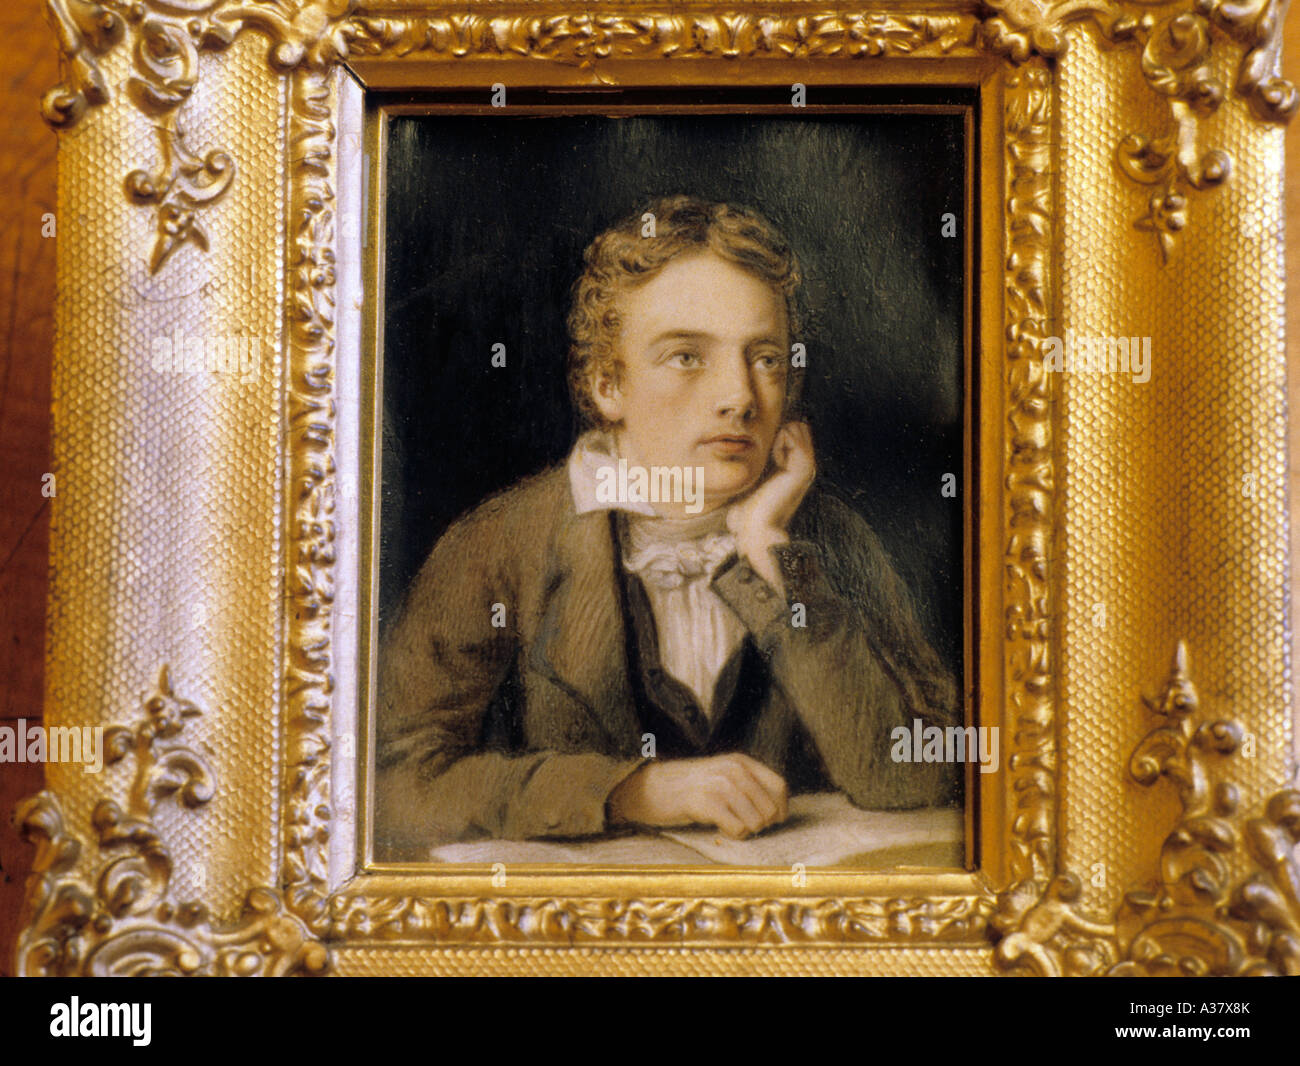 John Keats, poète romantique, la littérature anglaise, Portrait par Joseph Severn, Hampstead, peinture, Londres, Angleterre, Royaume-Uni, l'histoire Banque D'Images